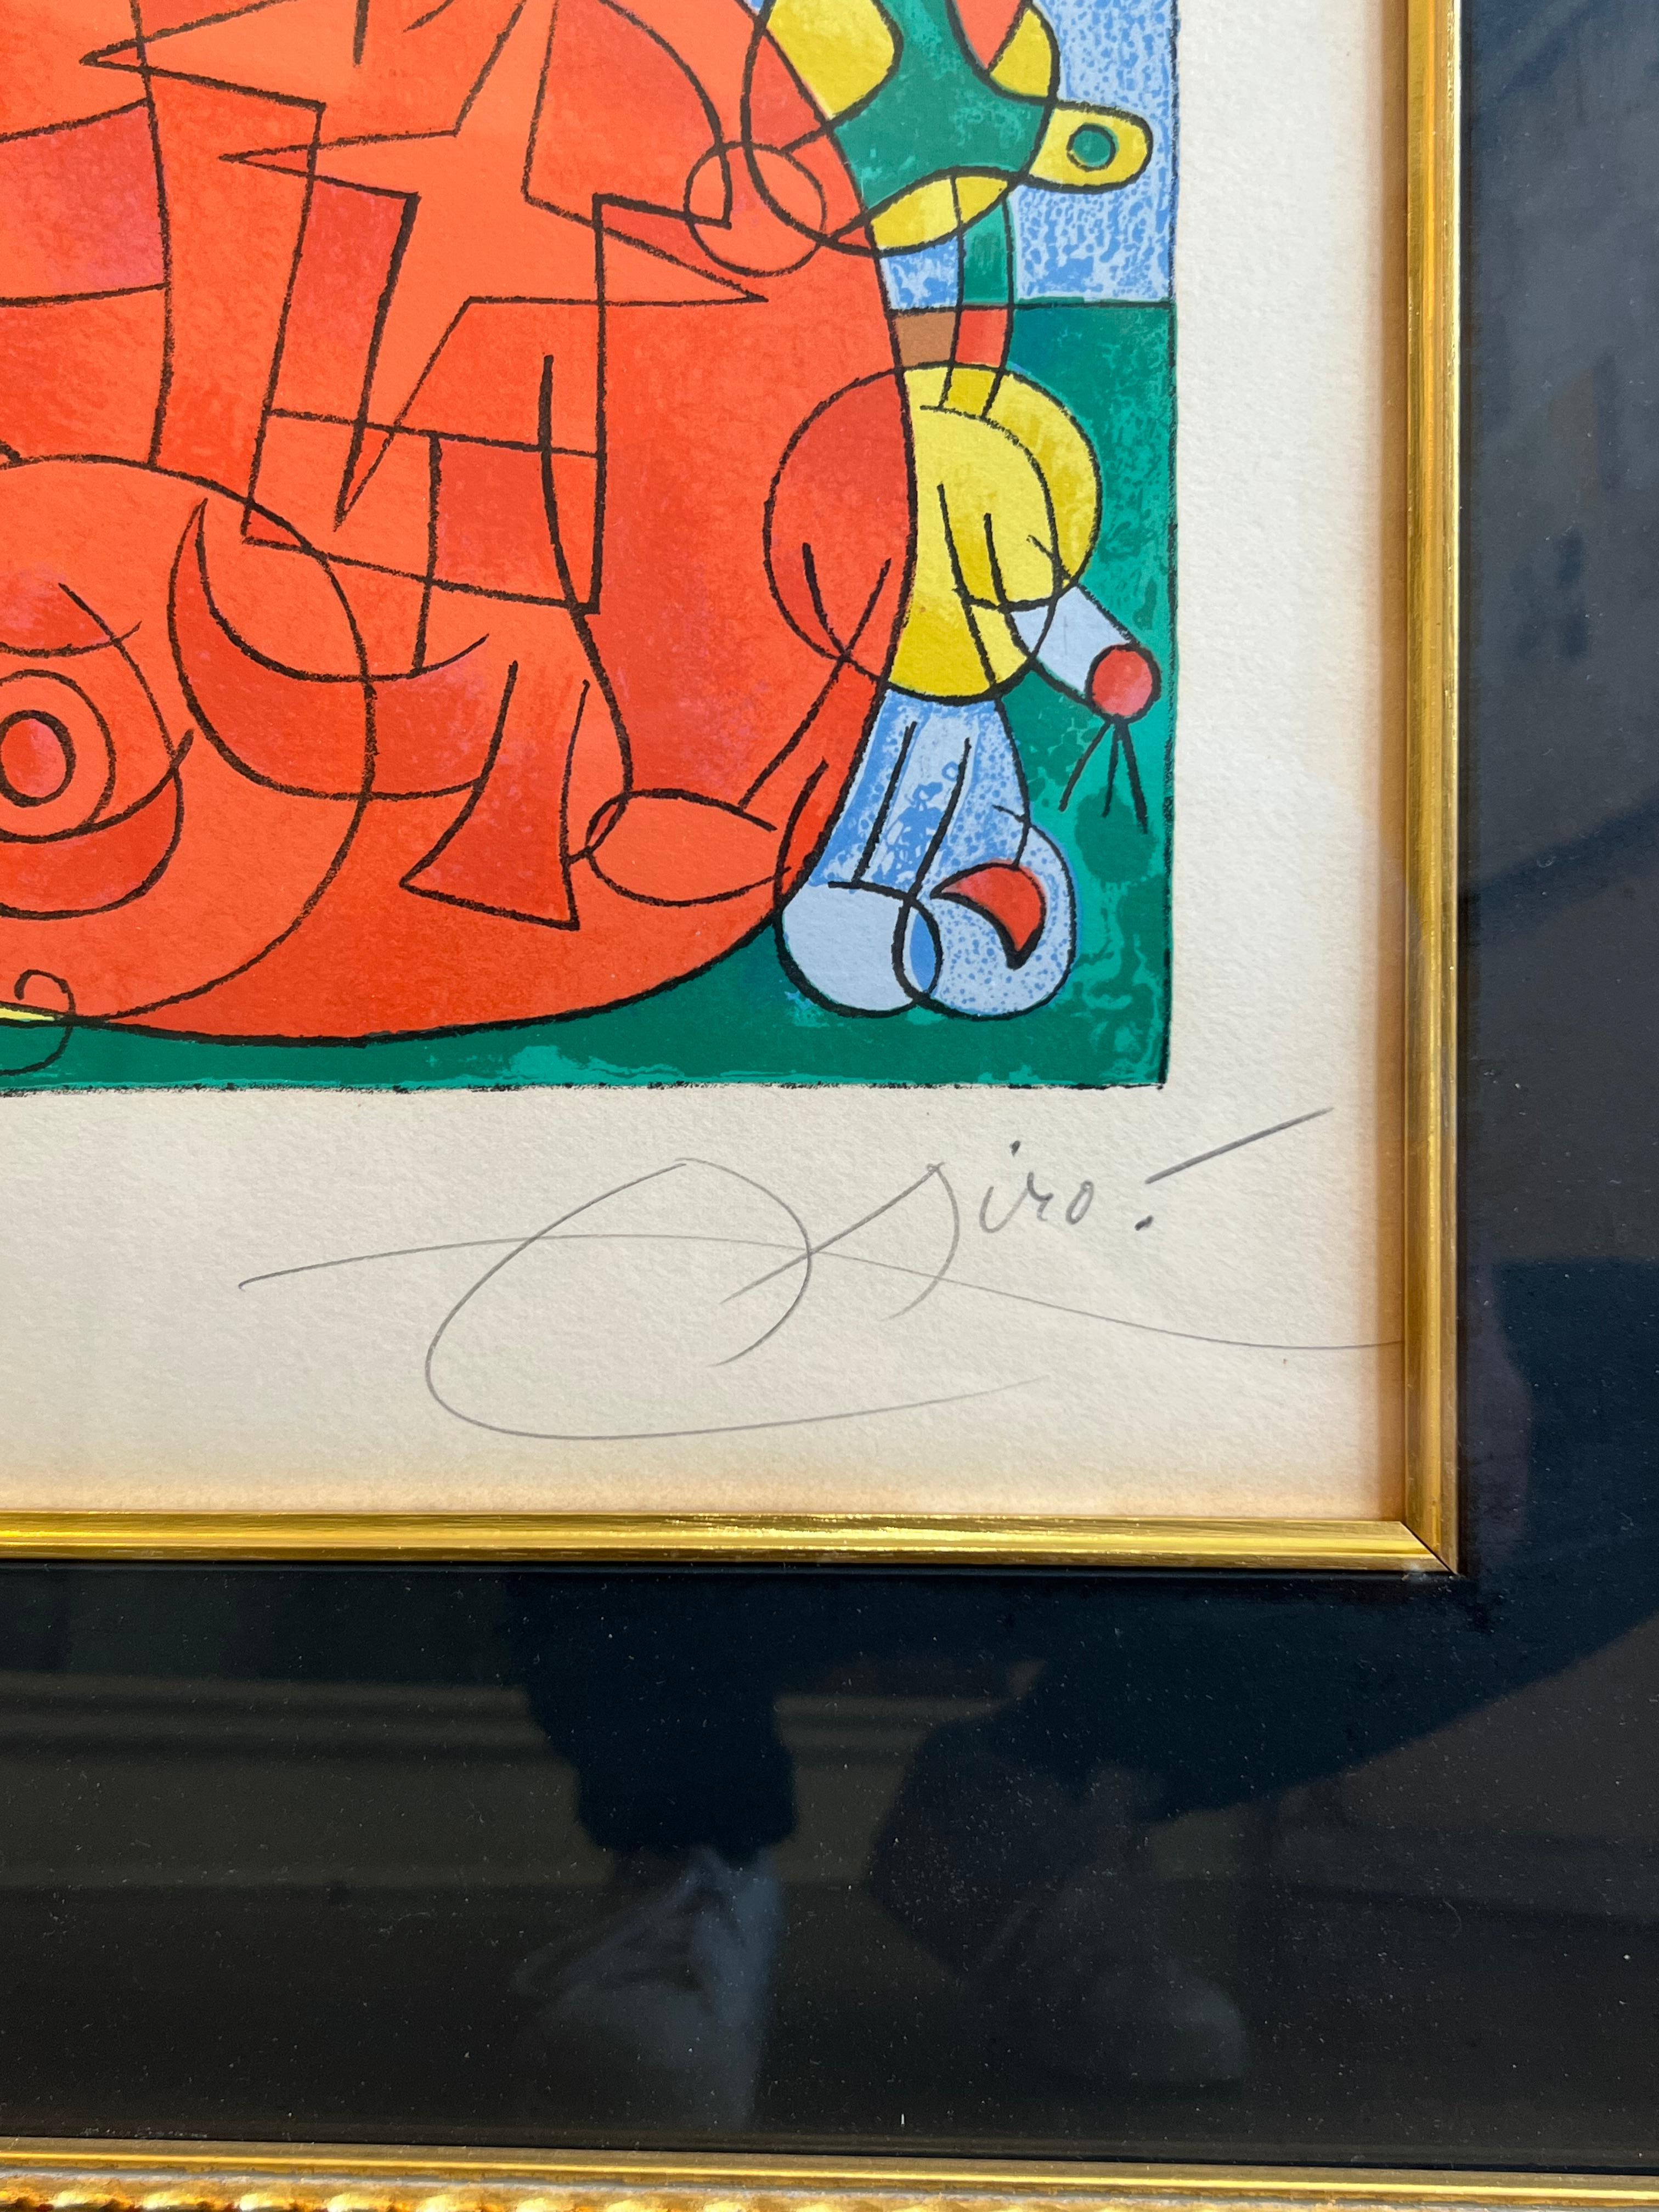 Véritable LITHOGRAPHIE AUTHENTIQUE SIGNÉE AU CRAYON par Joan MIro

Joan Miró
Ubu roi : planche 3
1966
Lithographie en couleurs, sur papier Arches, avec toutes les marges.
I. 16 x 24 5/8 in. 
S. 21 1/8 x 29 1/2 in. 
Avec cadre 34x42 pouces

Signé et